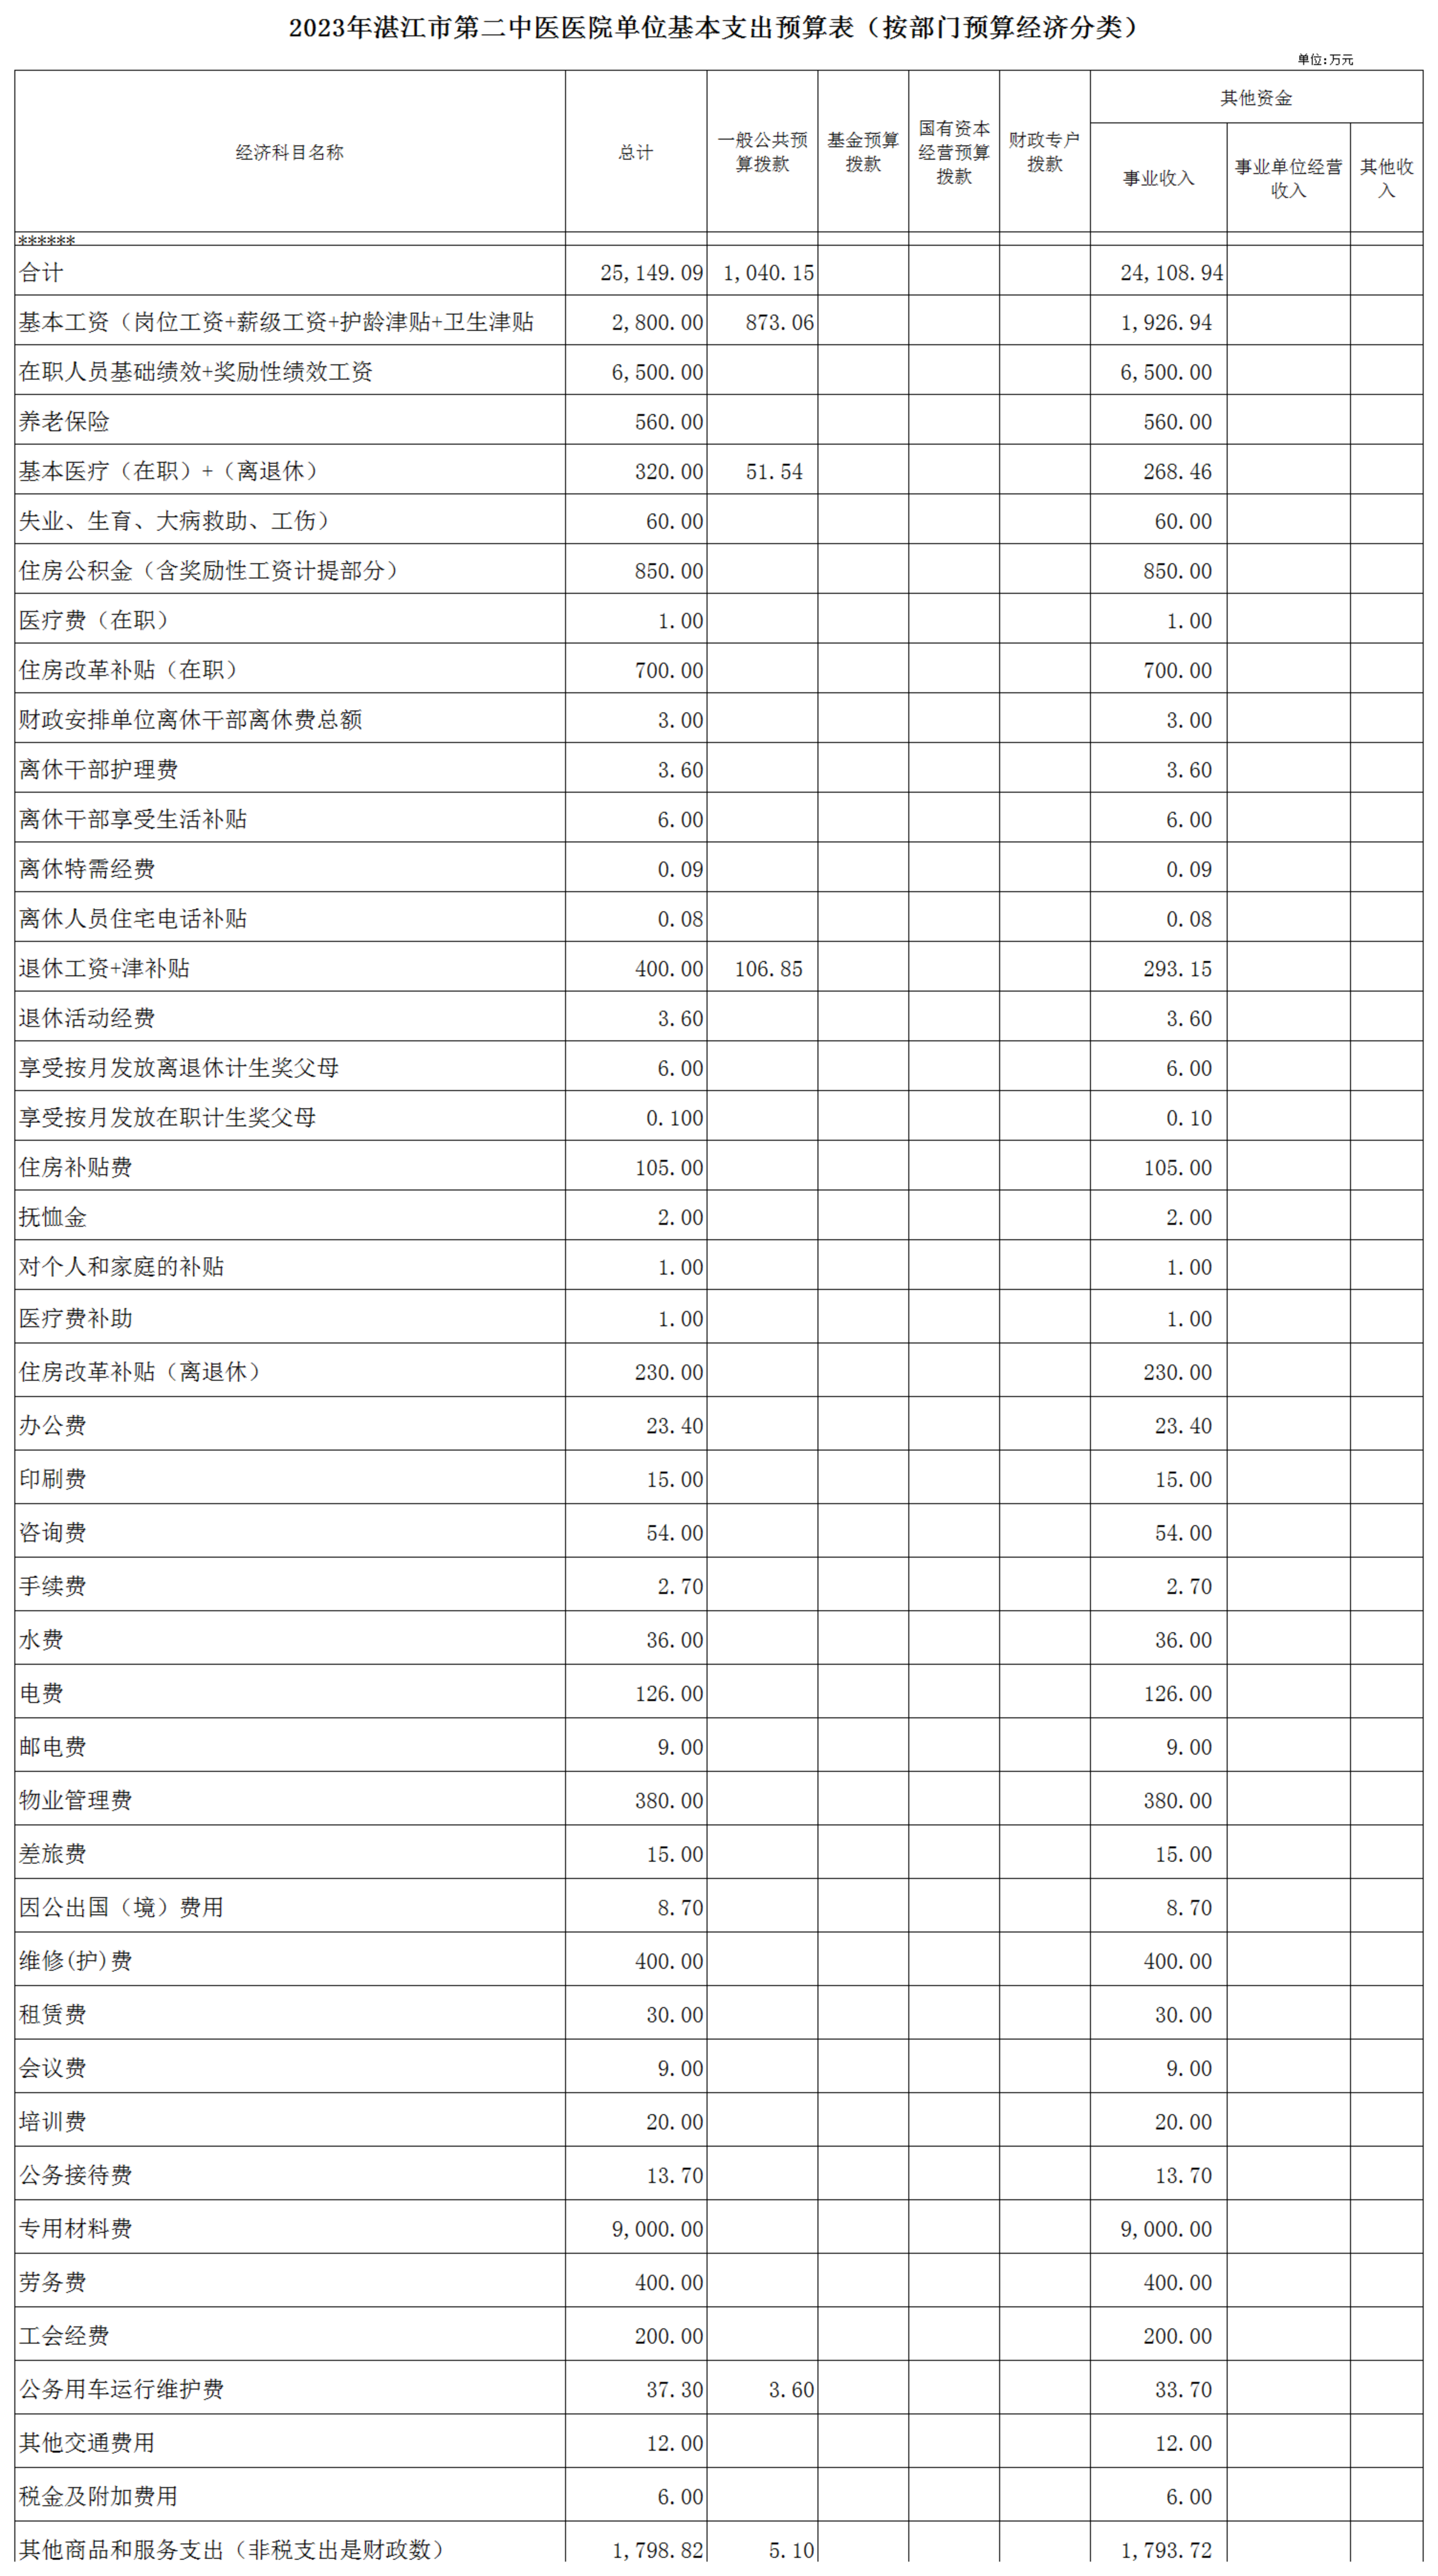 hjc888黄金城官网入口2023年预算编报说明-官网用_04.png